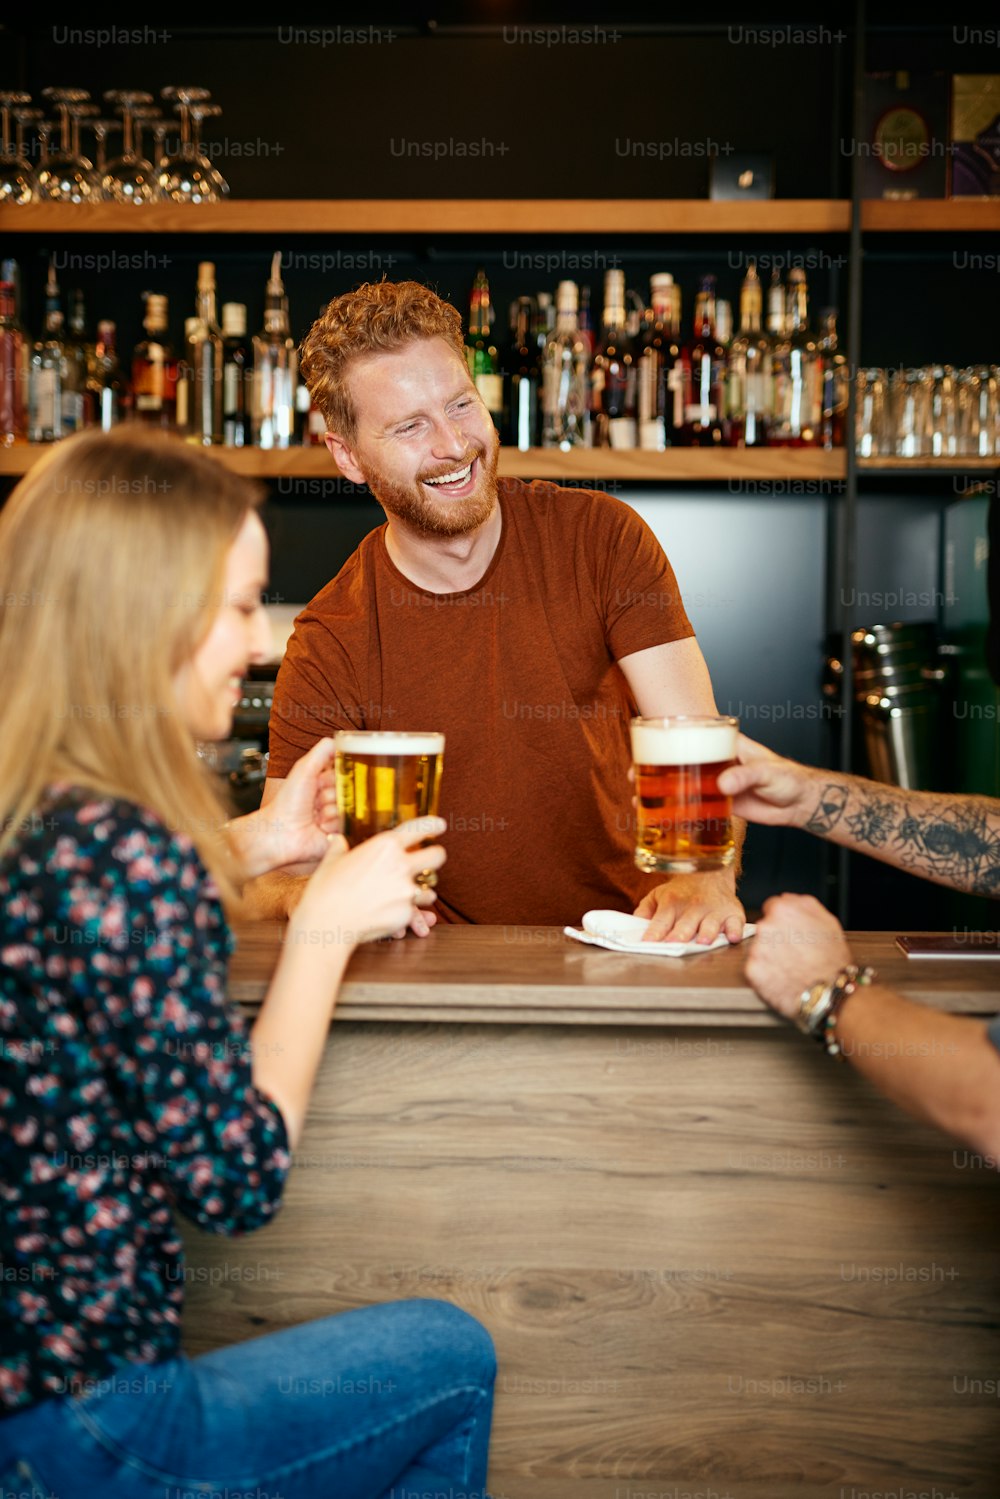 Des amis joyeux accoudés au comptoir du bar, buvant de la bière et discutant avec le barman. Sortie nocturne.